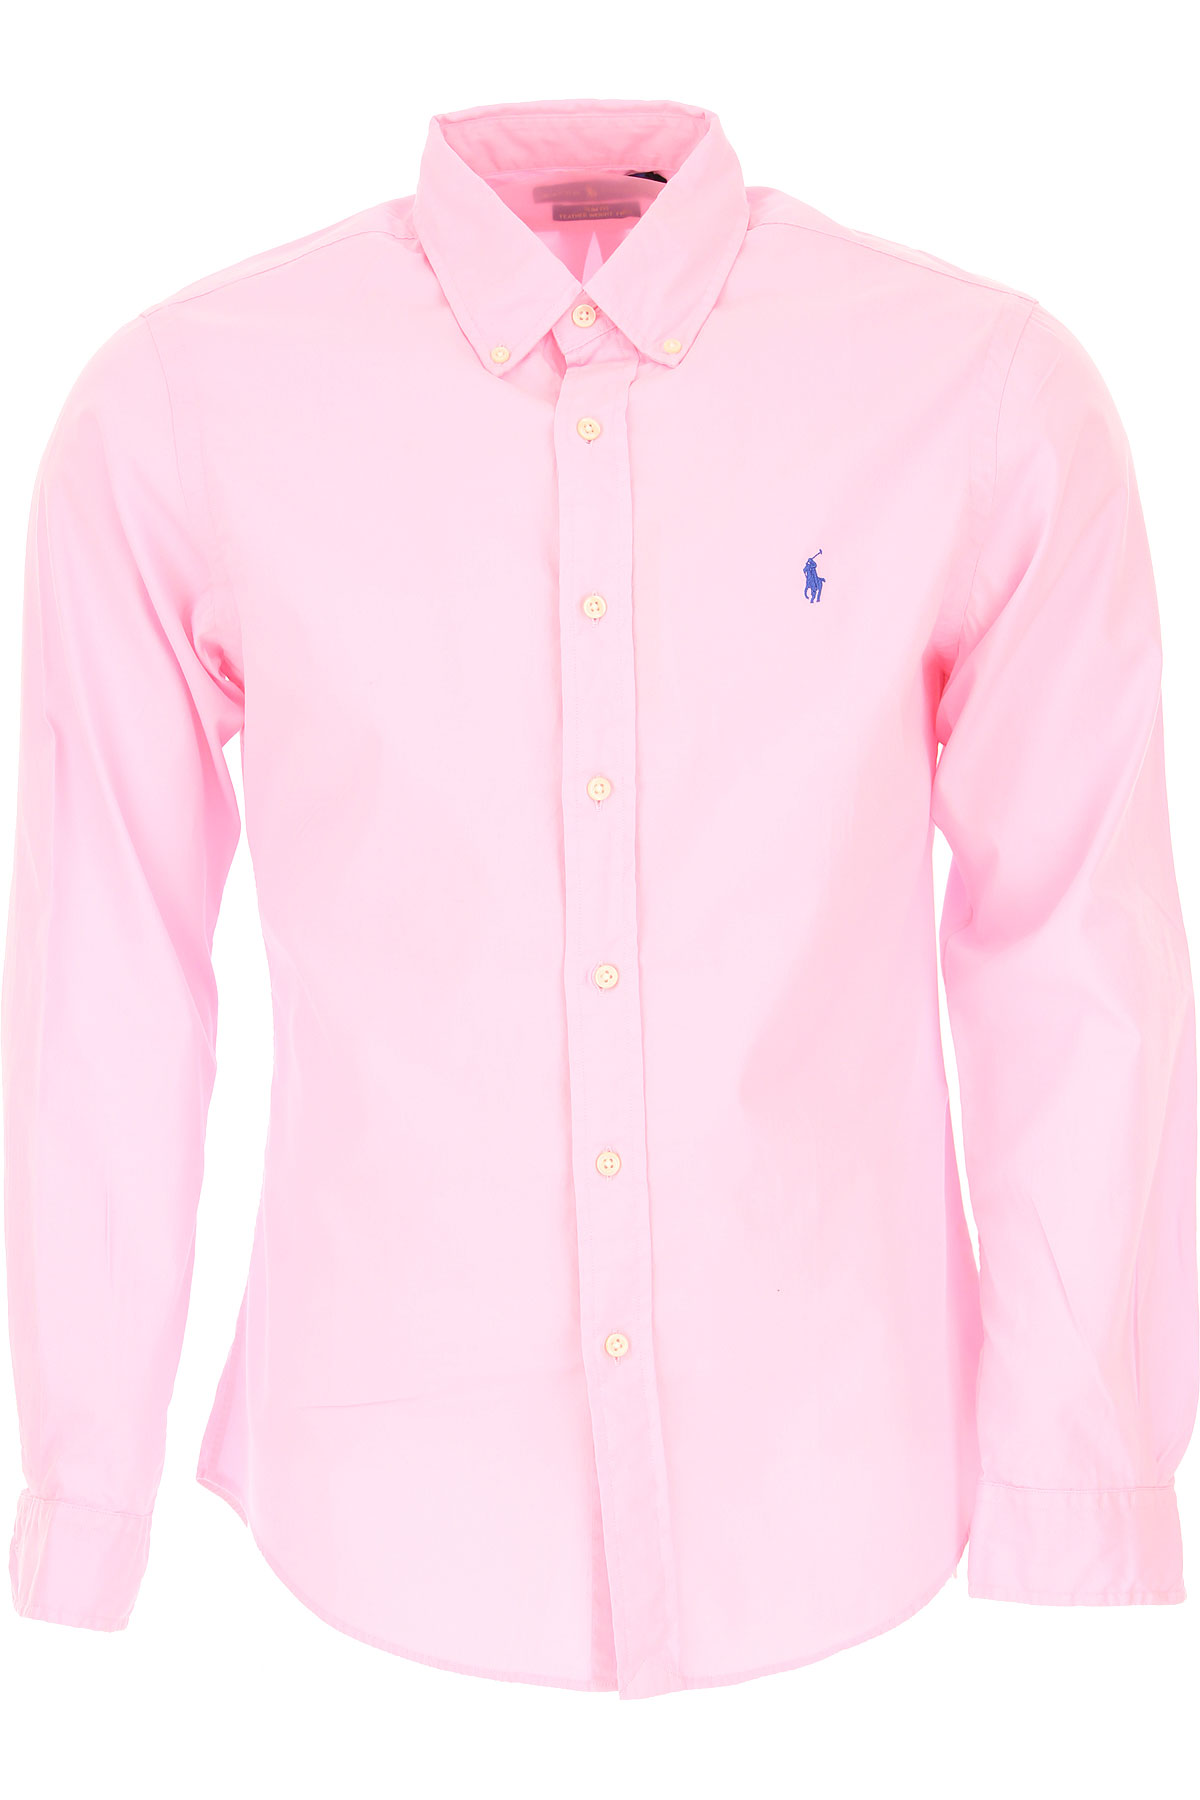 Ralph Lauren Hemde für Herren, Oberhemd Günstig im Sale, Pink, Baumwolle, 2017, L M S XL